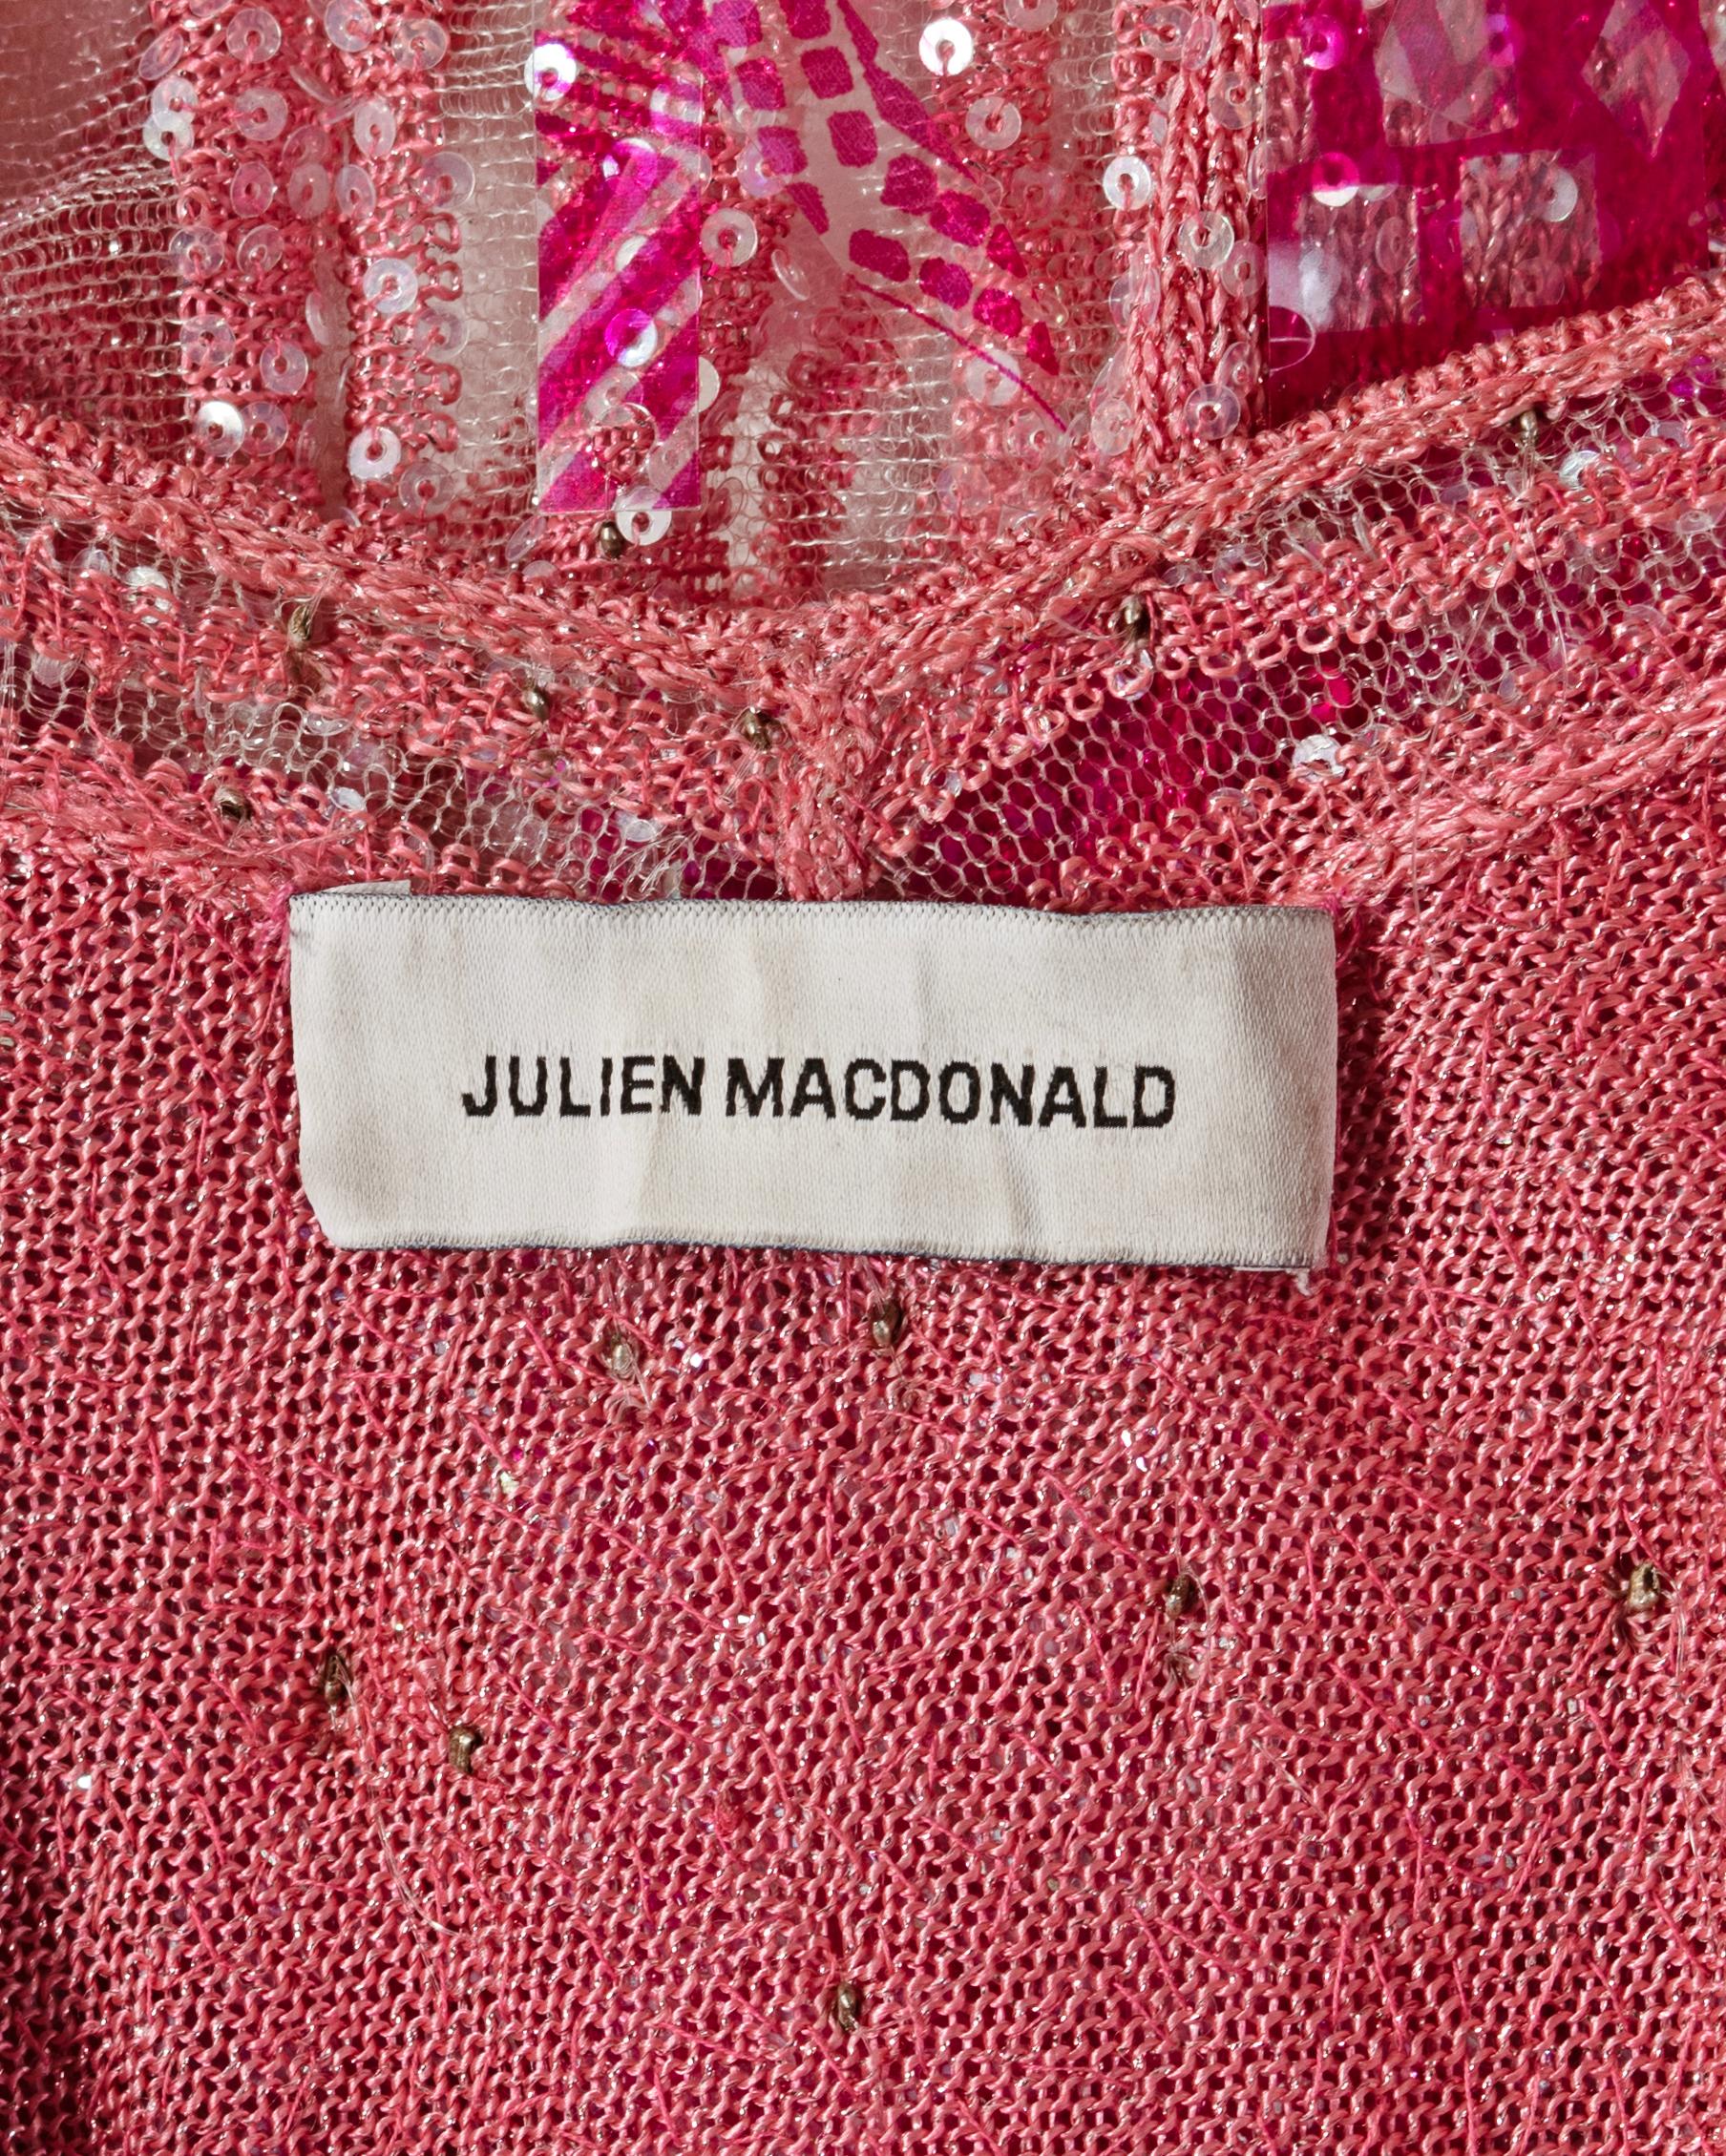 Julien MacDonald Pink Striped Knit Embellished Evening Dress, ss 2002 For Sale 8